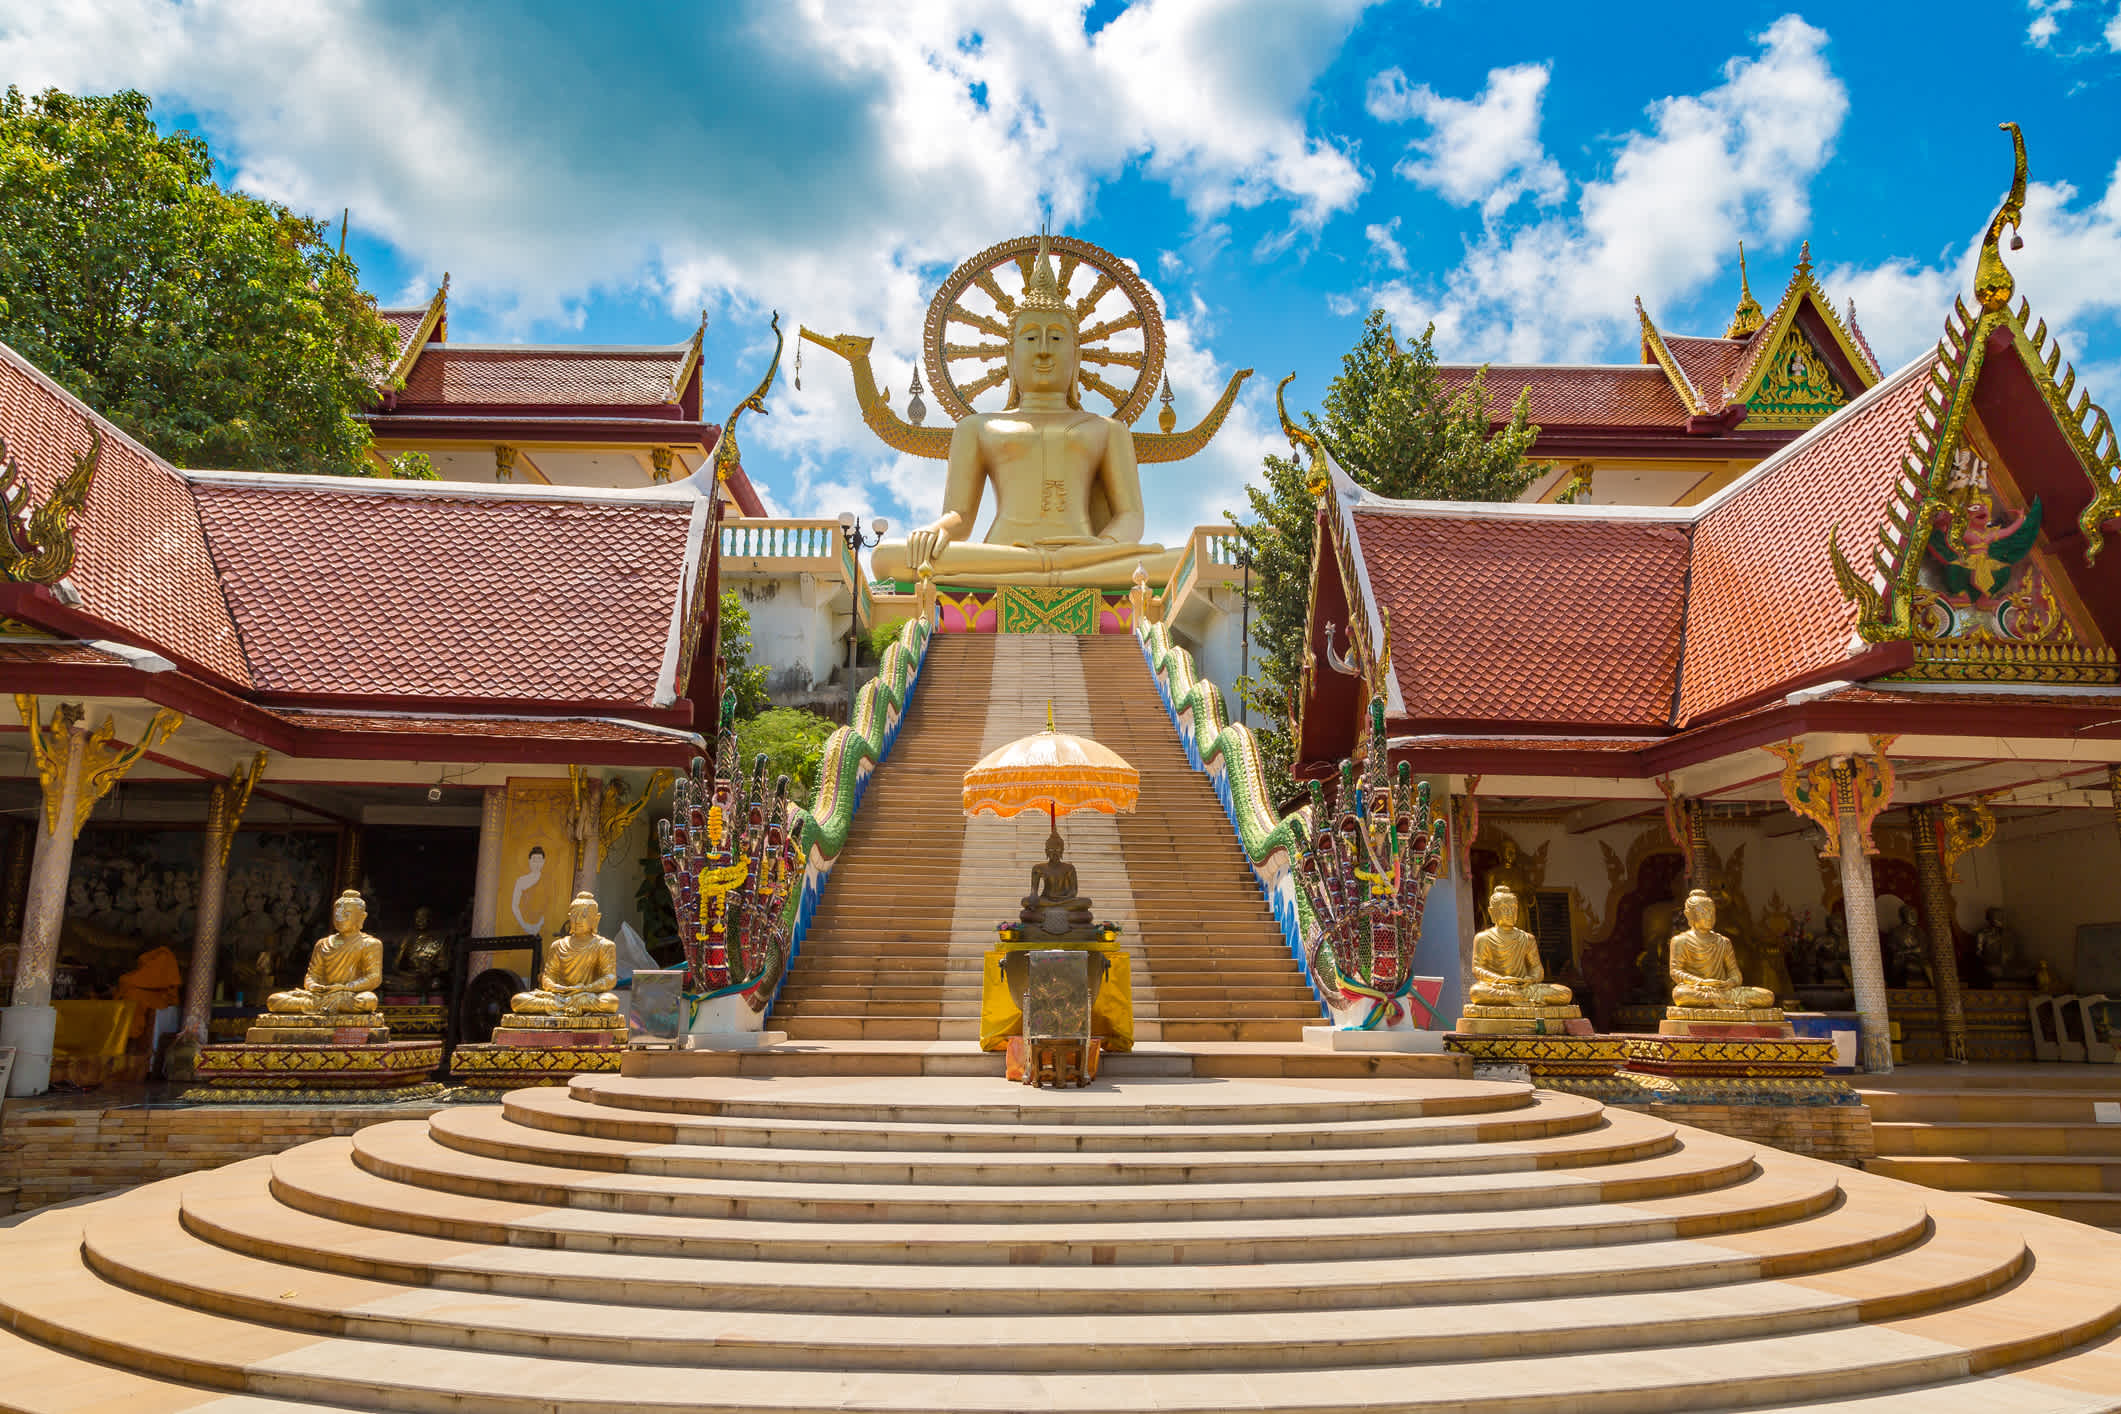 Großer Buddha Statue auf Koh Samui, Thailand 

